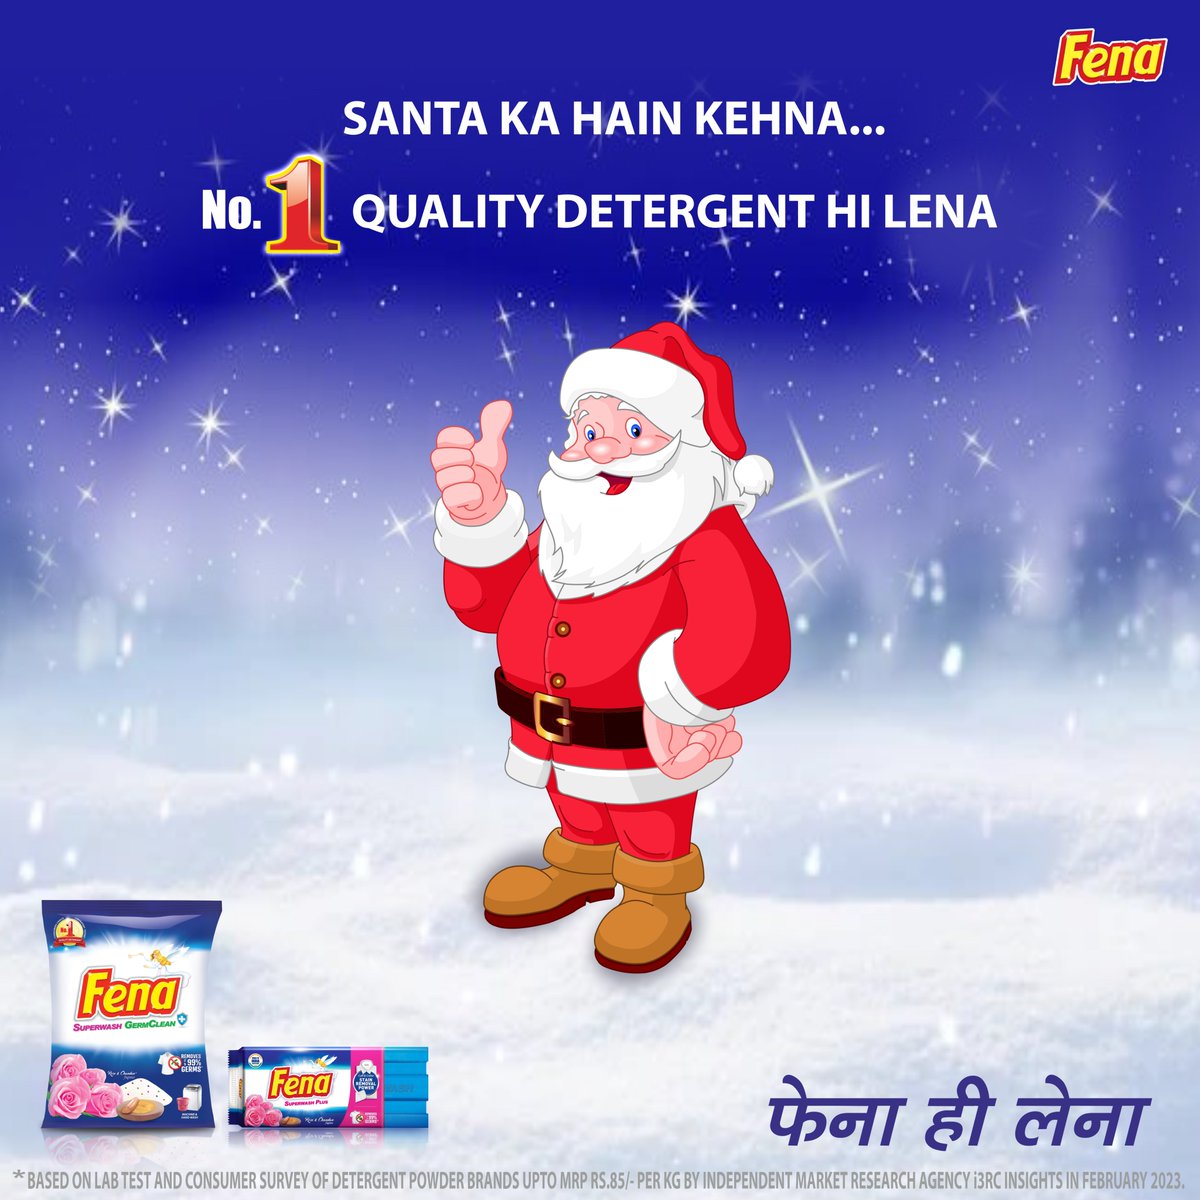 Fena, India’s No. 1 Quality Detergent Powder, wishes you a Merry Christmas! 🎄 🎅 

#FenaHiLena
#No1Quality
#MadeinIndia
#MerryChristmas